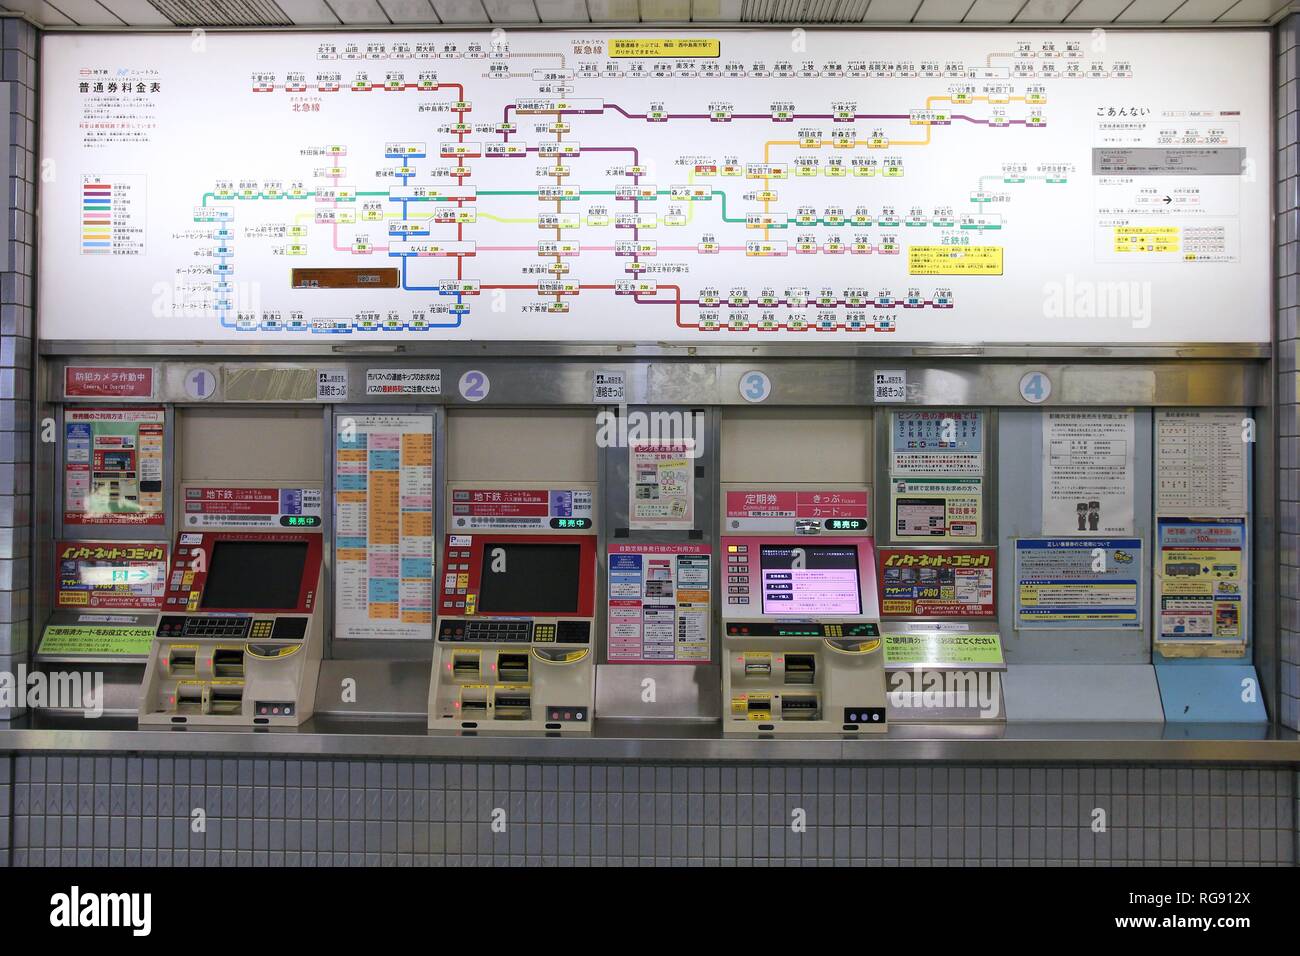 OSAKA, JAPON - 25 avril : Plan du réseau et les distributeurs de billets à la gare d'Osaka le 25 avril 2012 à Osaka, Japon. C'est la 3e station la plus occupée dans le monde entier Banque D'Images